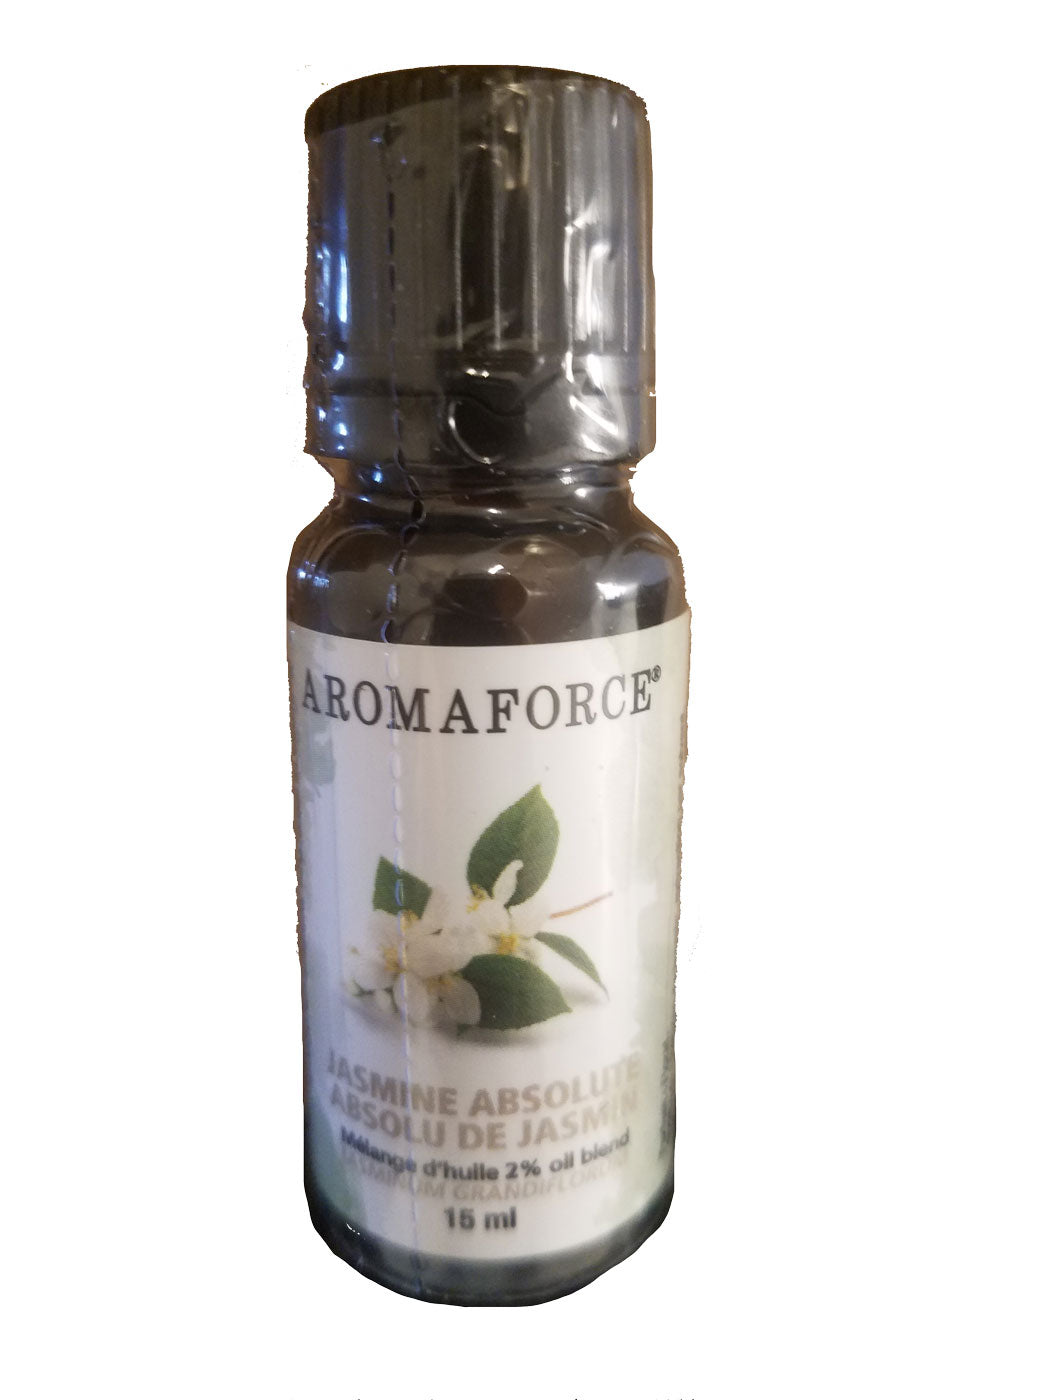 Aromaforce Jasmine Absolute 2% Essential Oil 15ml